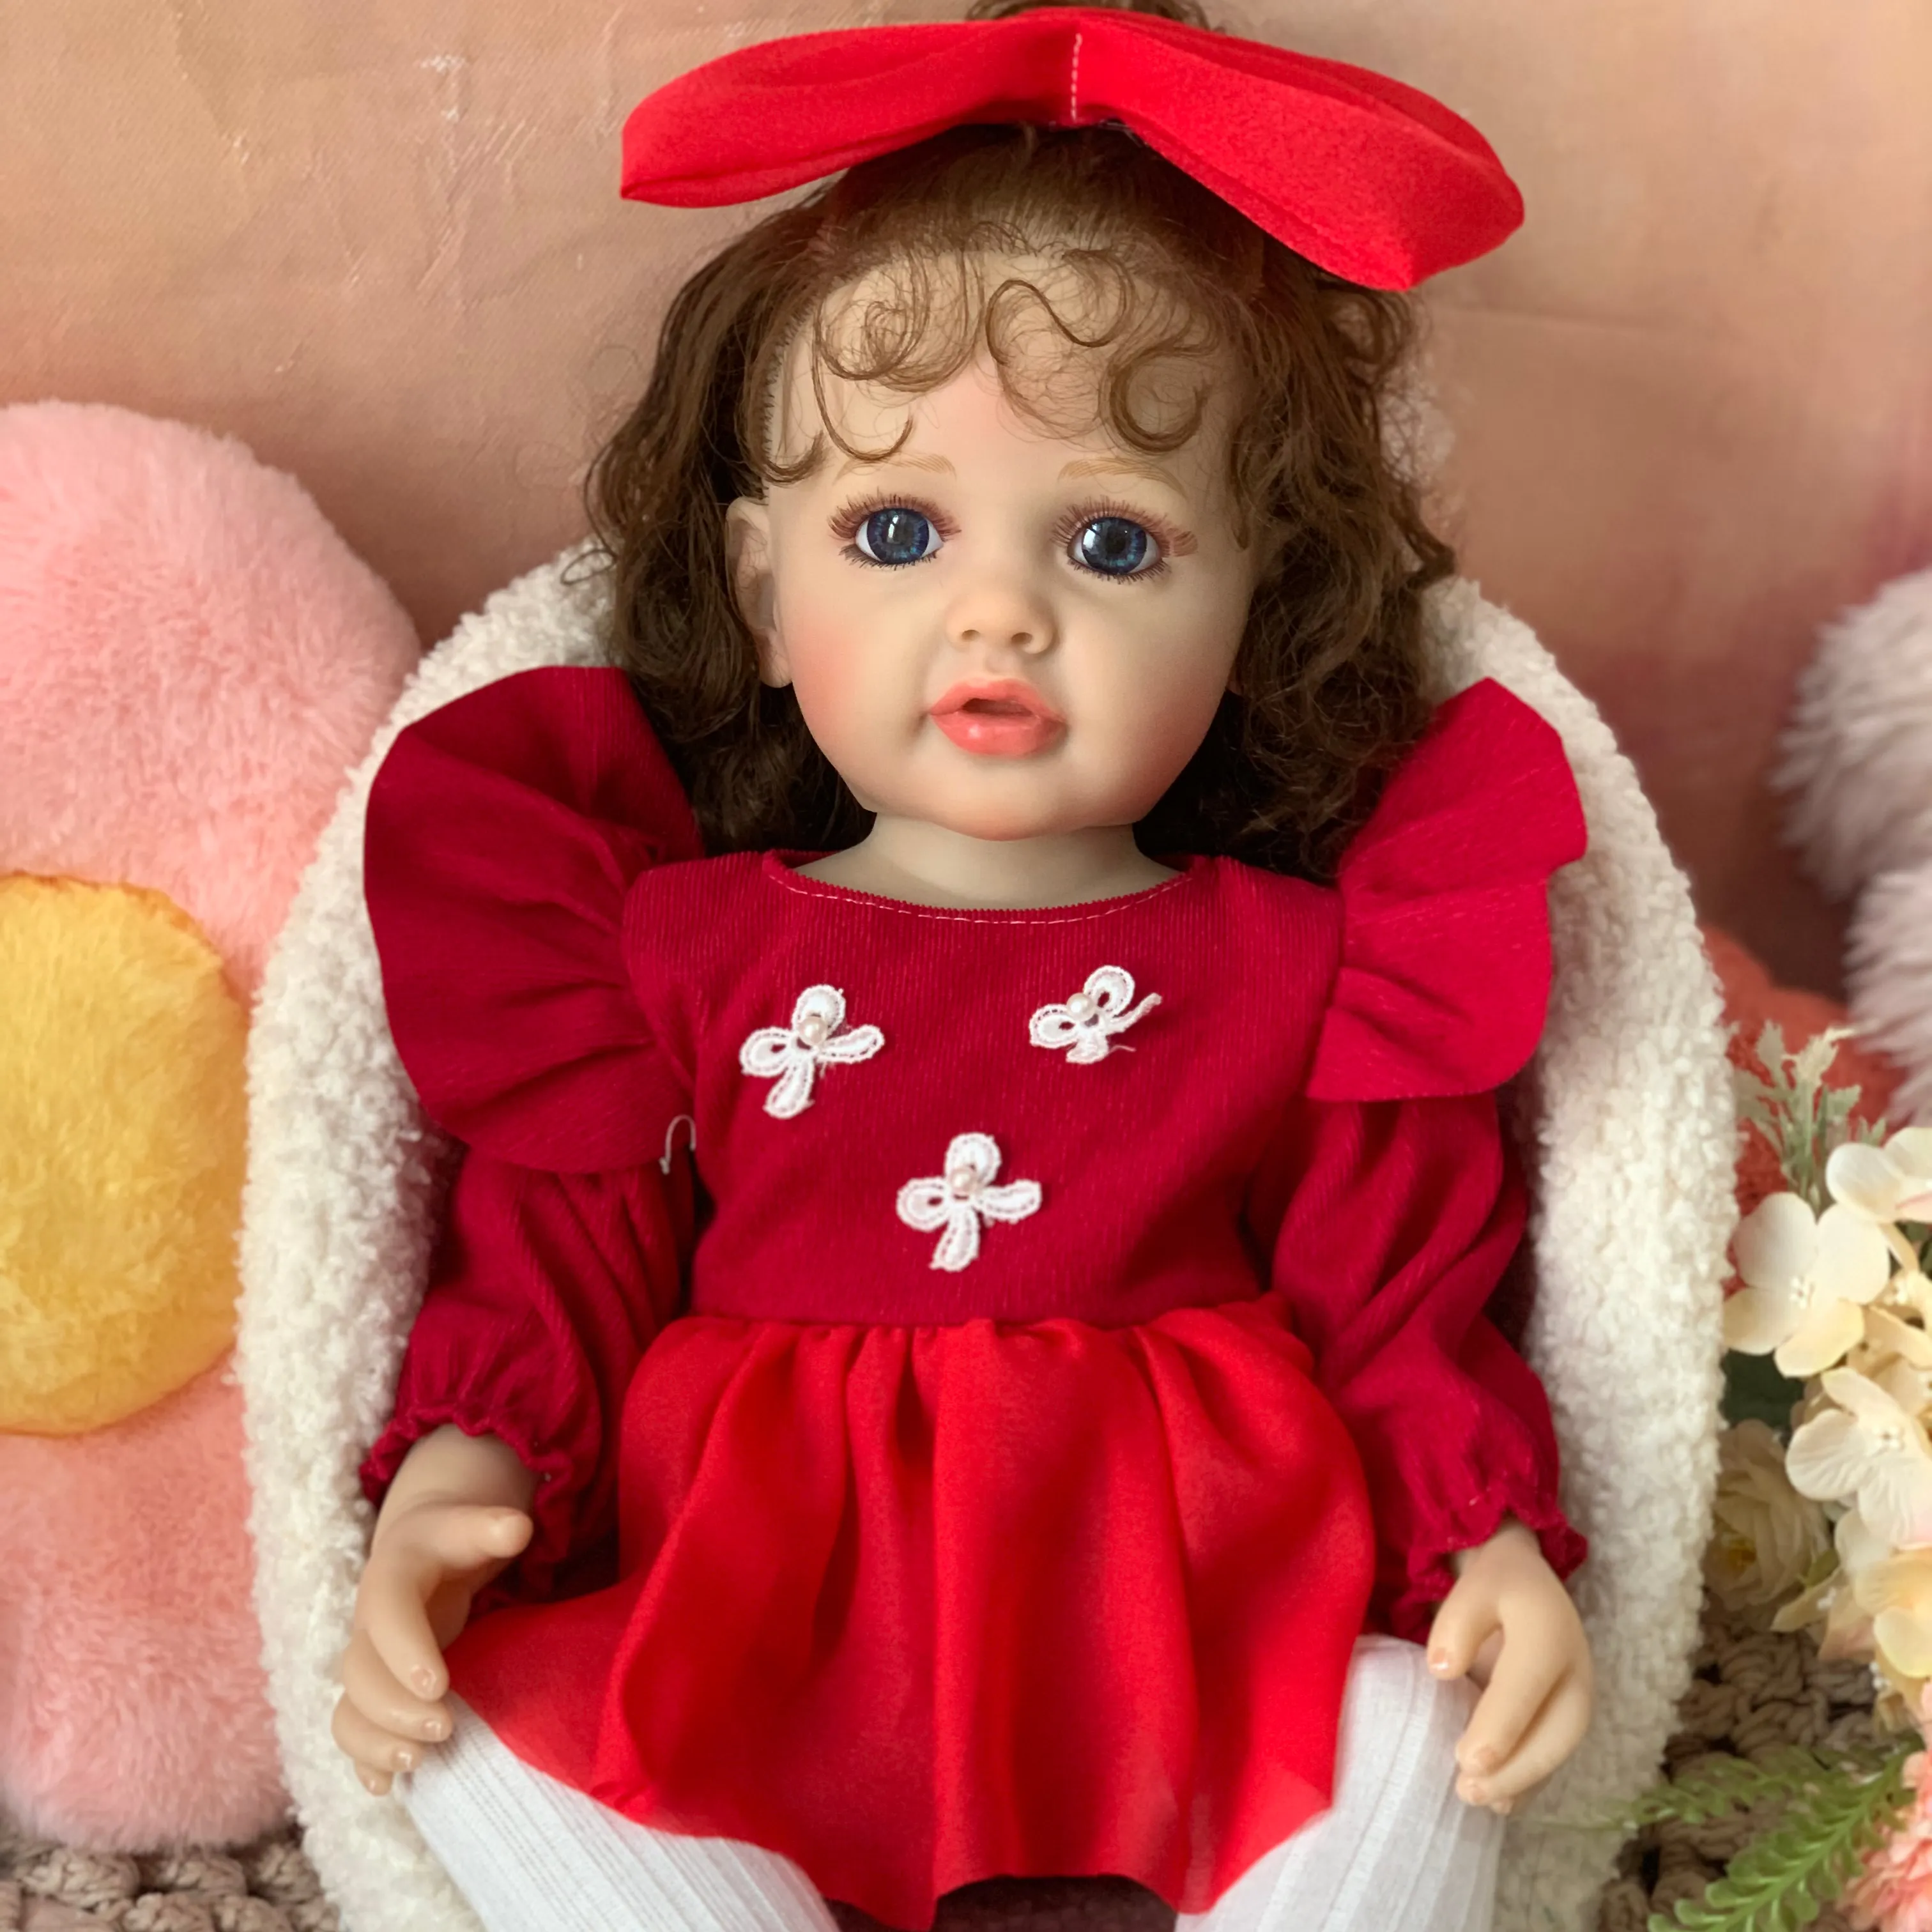 R & Bリアルキット幼児ドリンクベビーソフトベベビニールブラックインチ卸売販売シートツインおもちゃ女性生まれ変わった人形